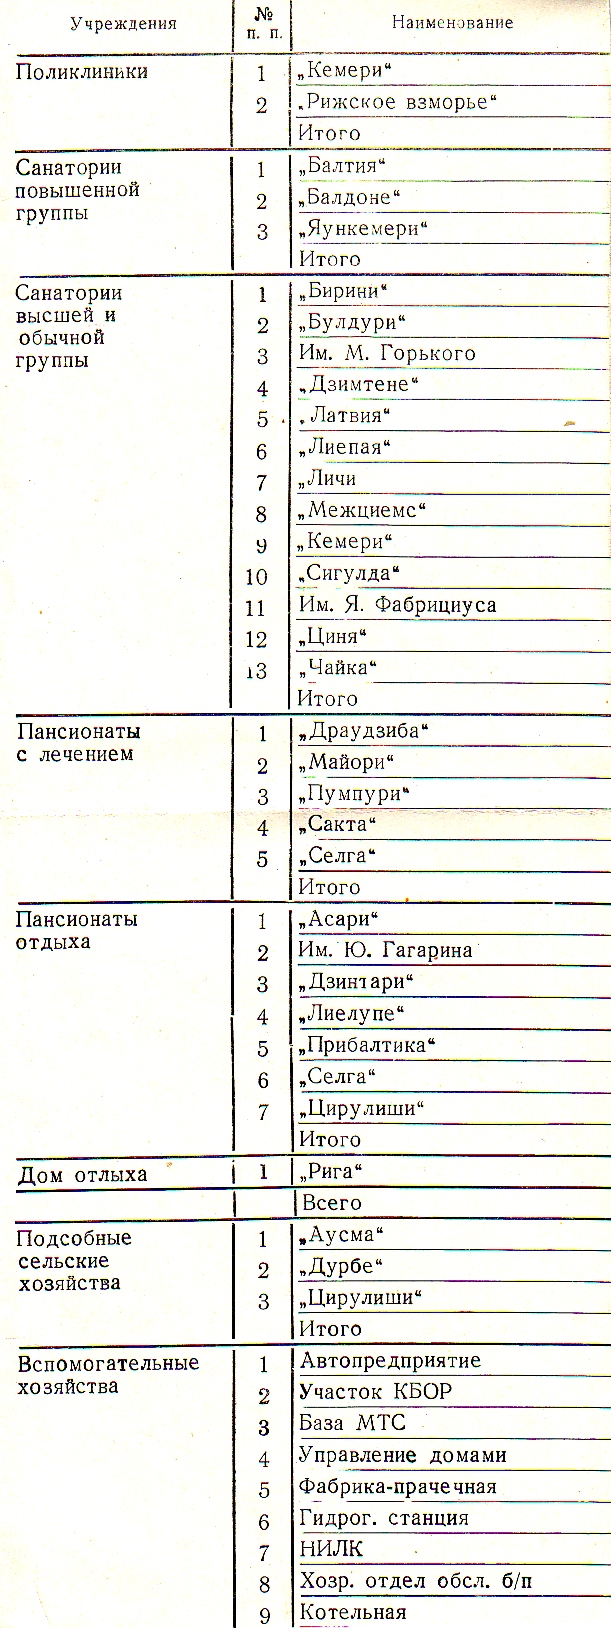 Курортсовет. 
Список советских здравниц в Латвии. 1984 год